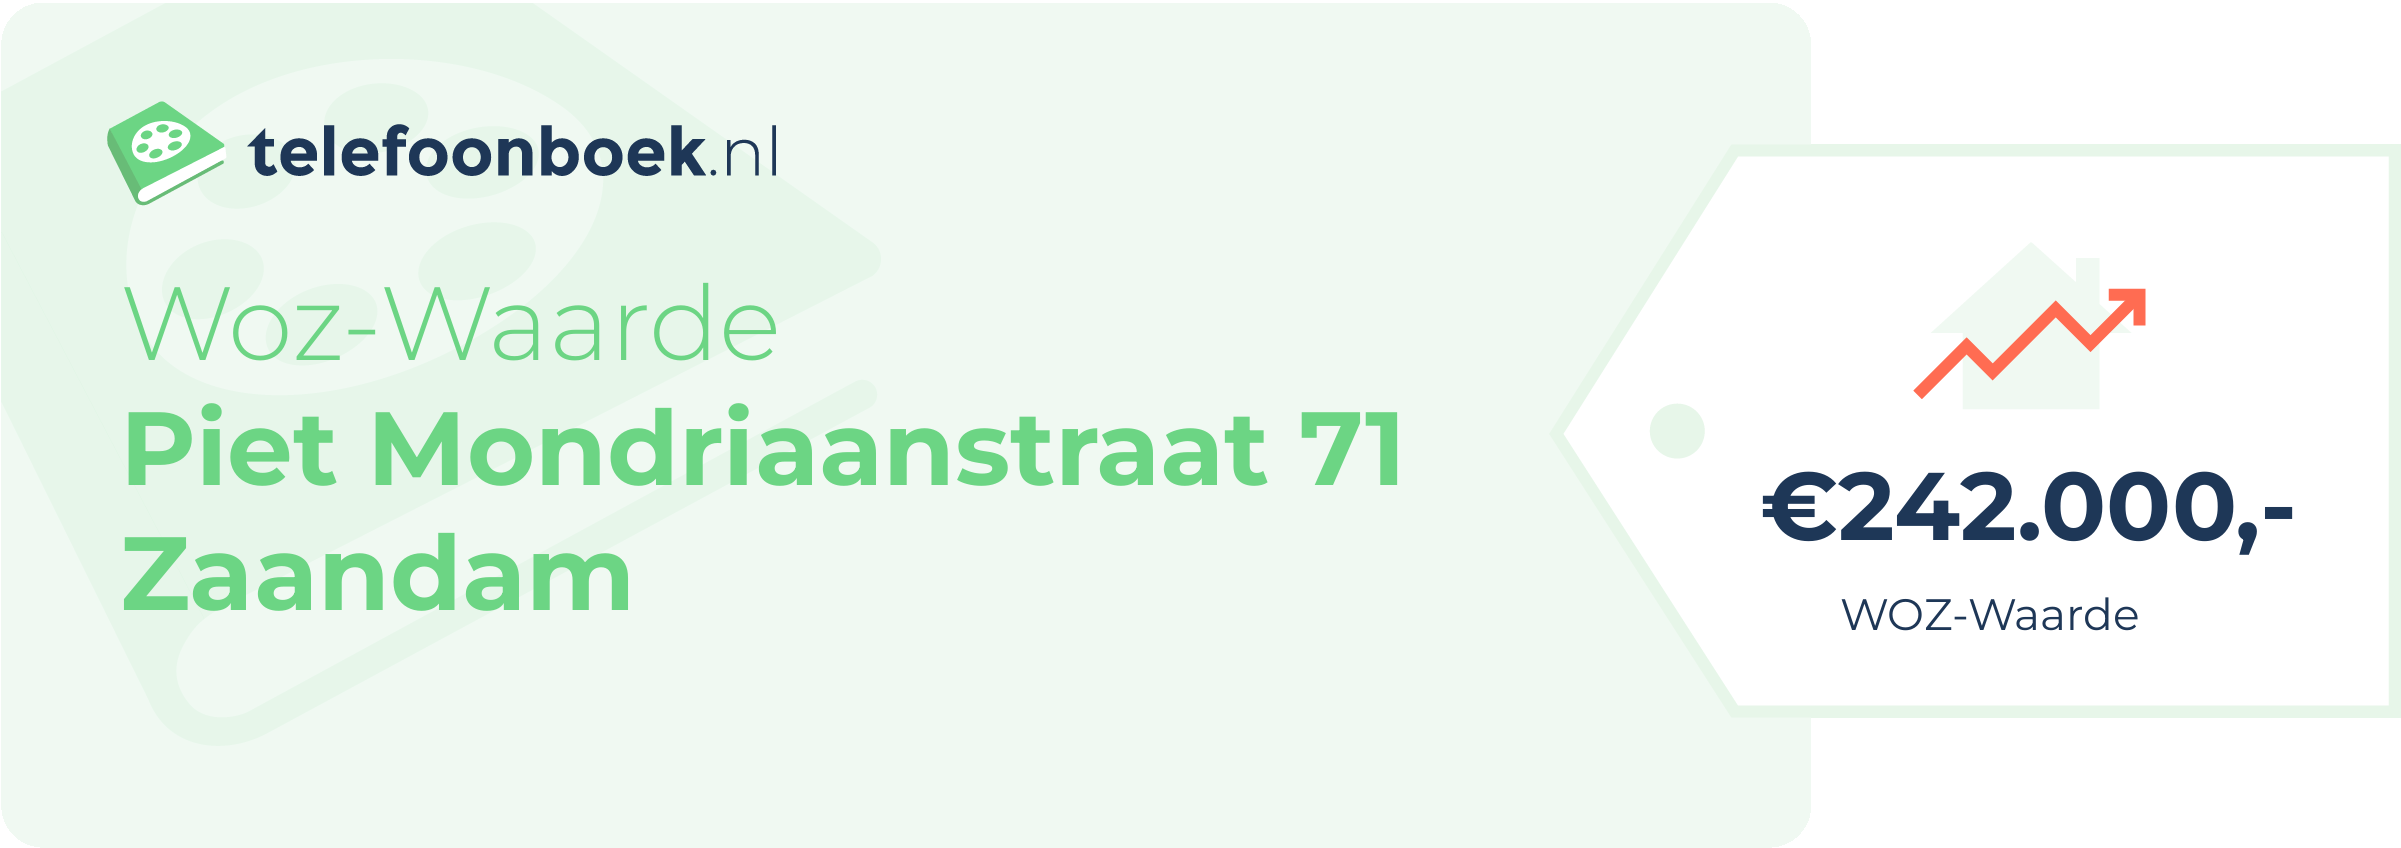 WOZ-waarde Piet Mondriaanstraat 71 Zaandam